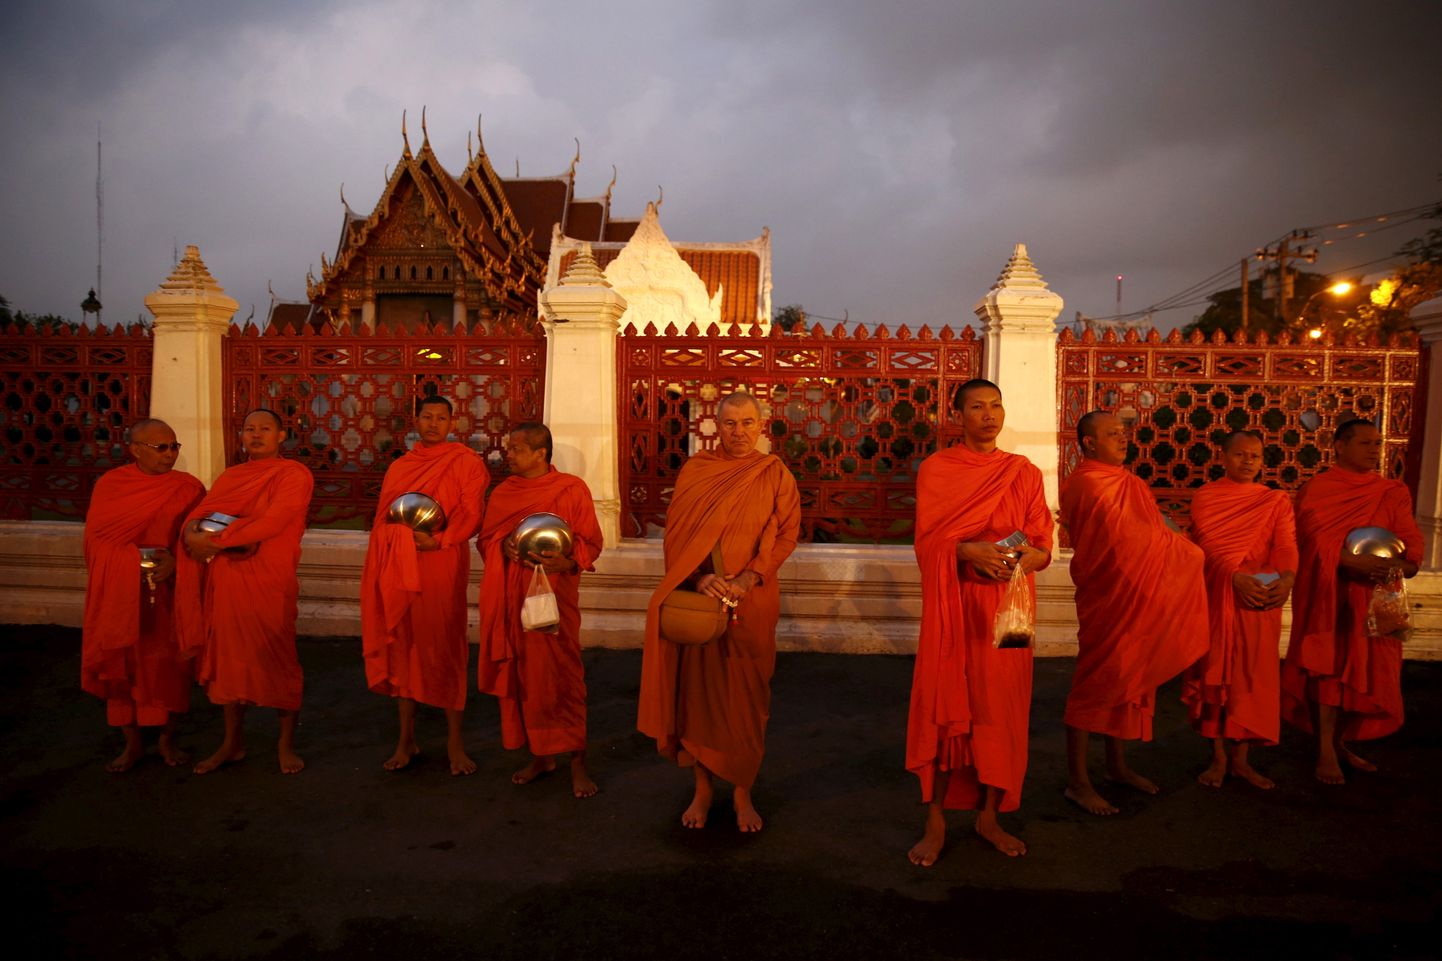 Tai buda mungad varahommikul templi ees Bangkokis, et koguda toidualmuseid.